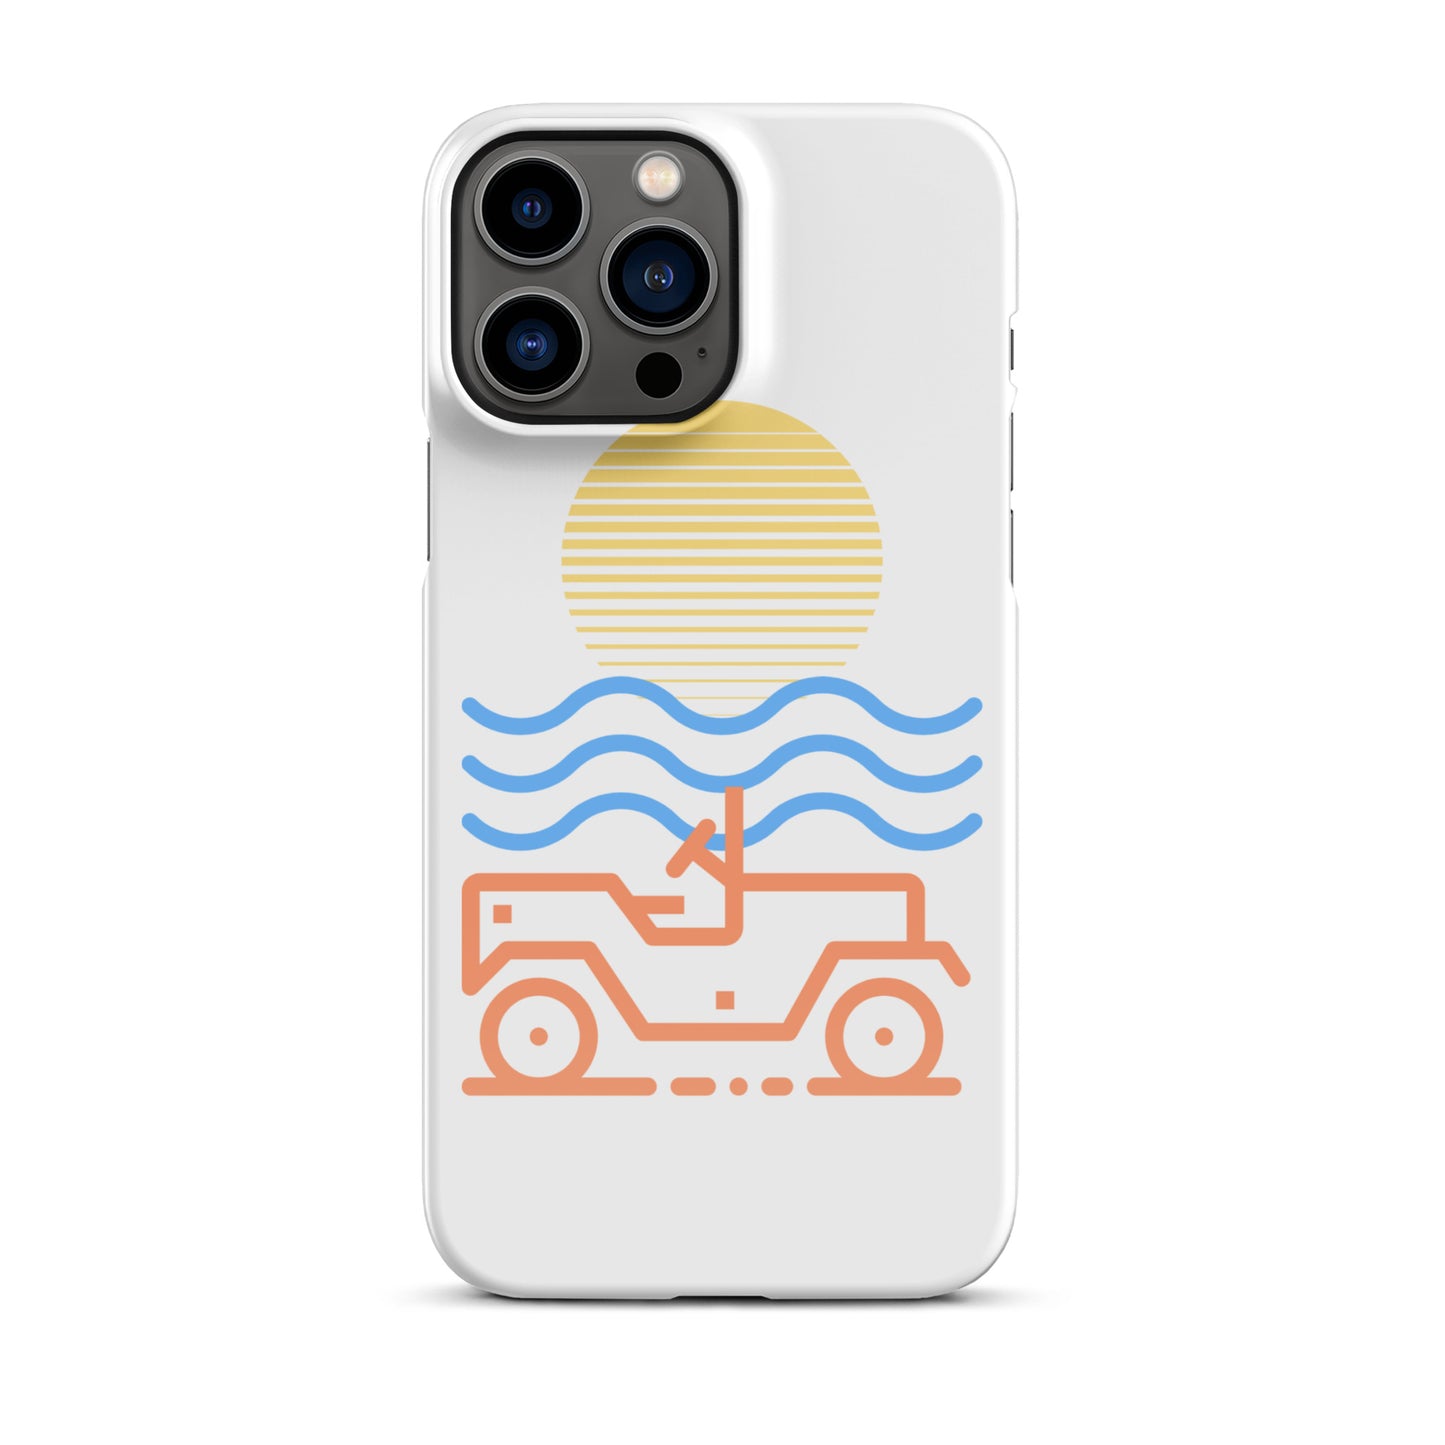 Snap case for iPhone® Sun Beach 4x4